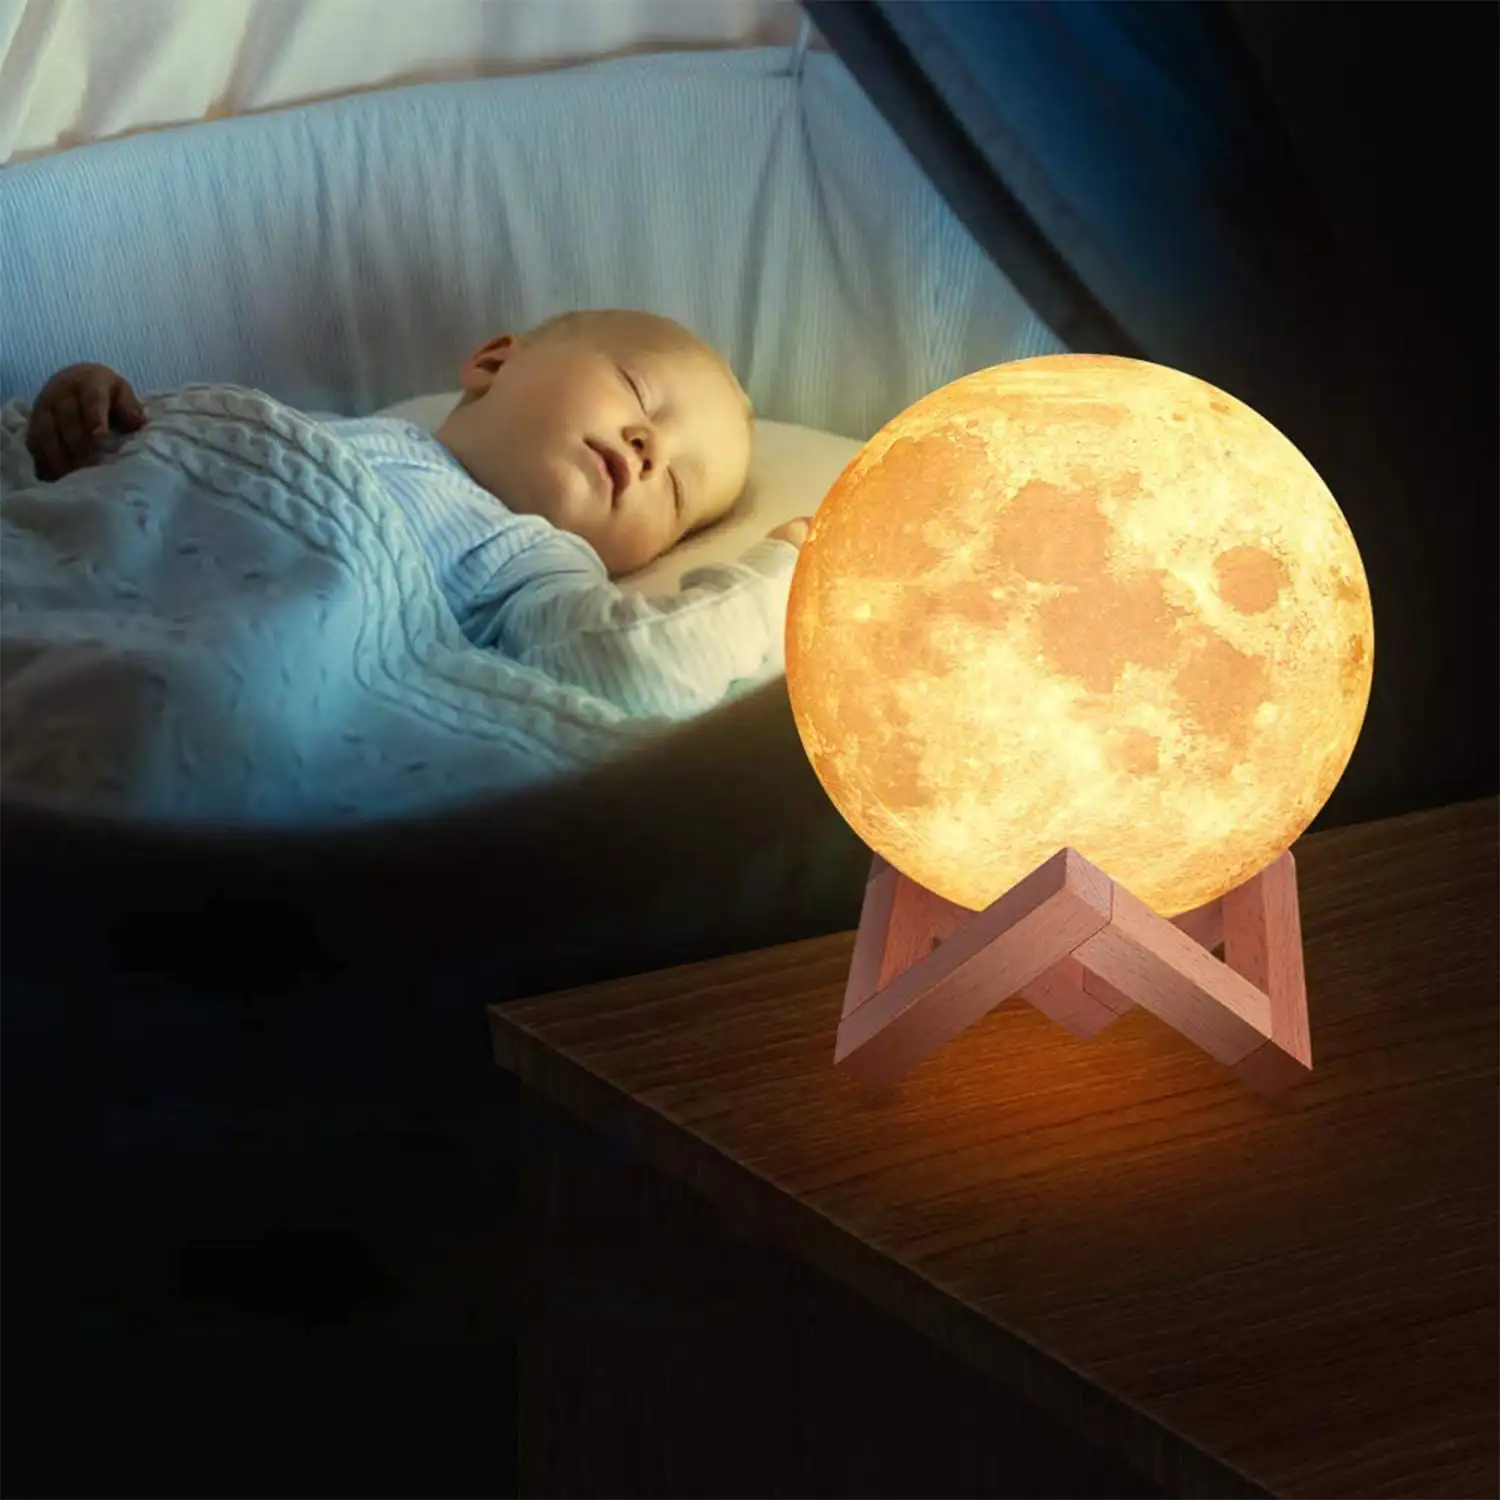 Lámpara lunar Moon Light multicolor con mando a distancia y modos de iluminación 15cms.